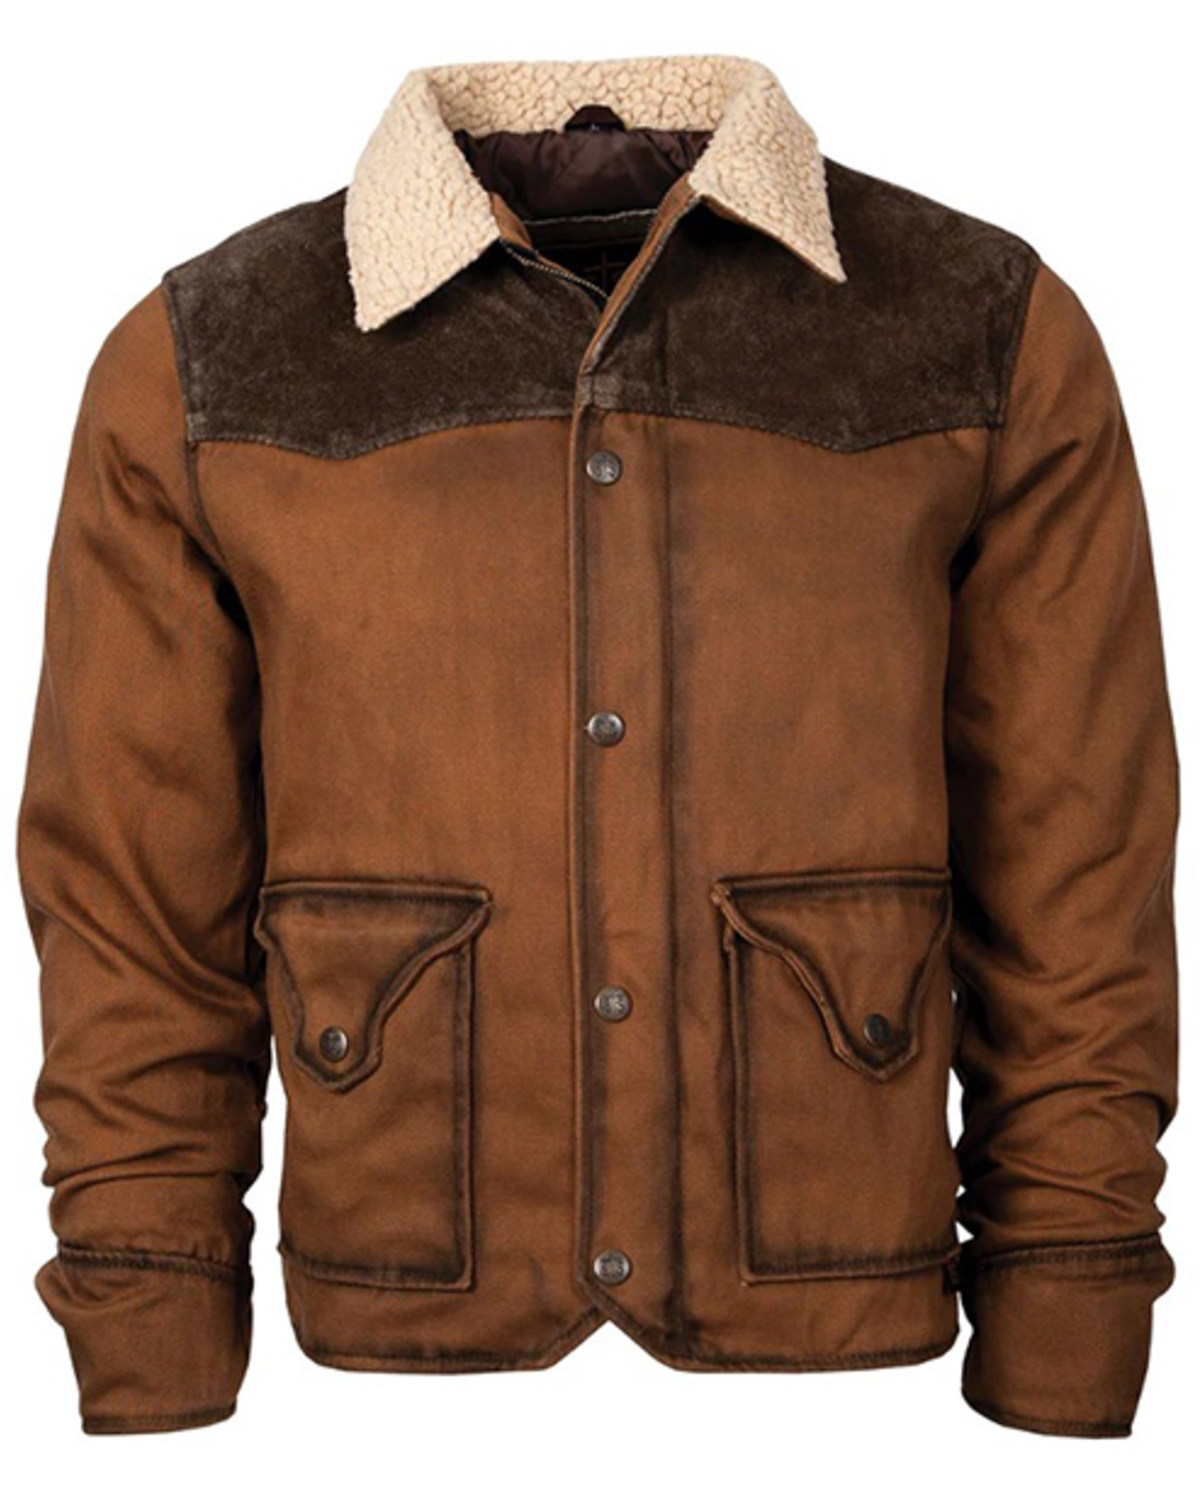 STS Ranchwear By Carroll Men's Daybreak Sherpa Jacket - Big